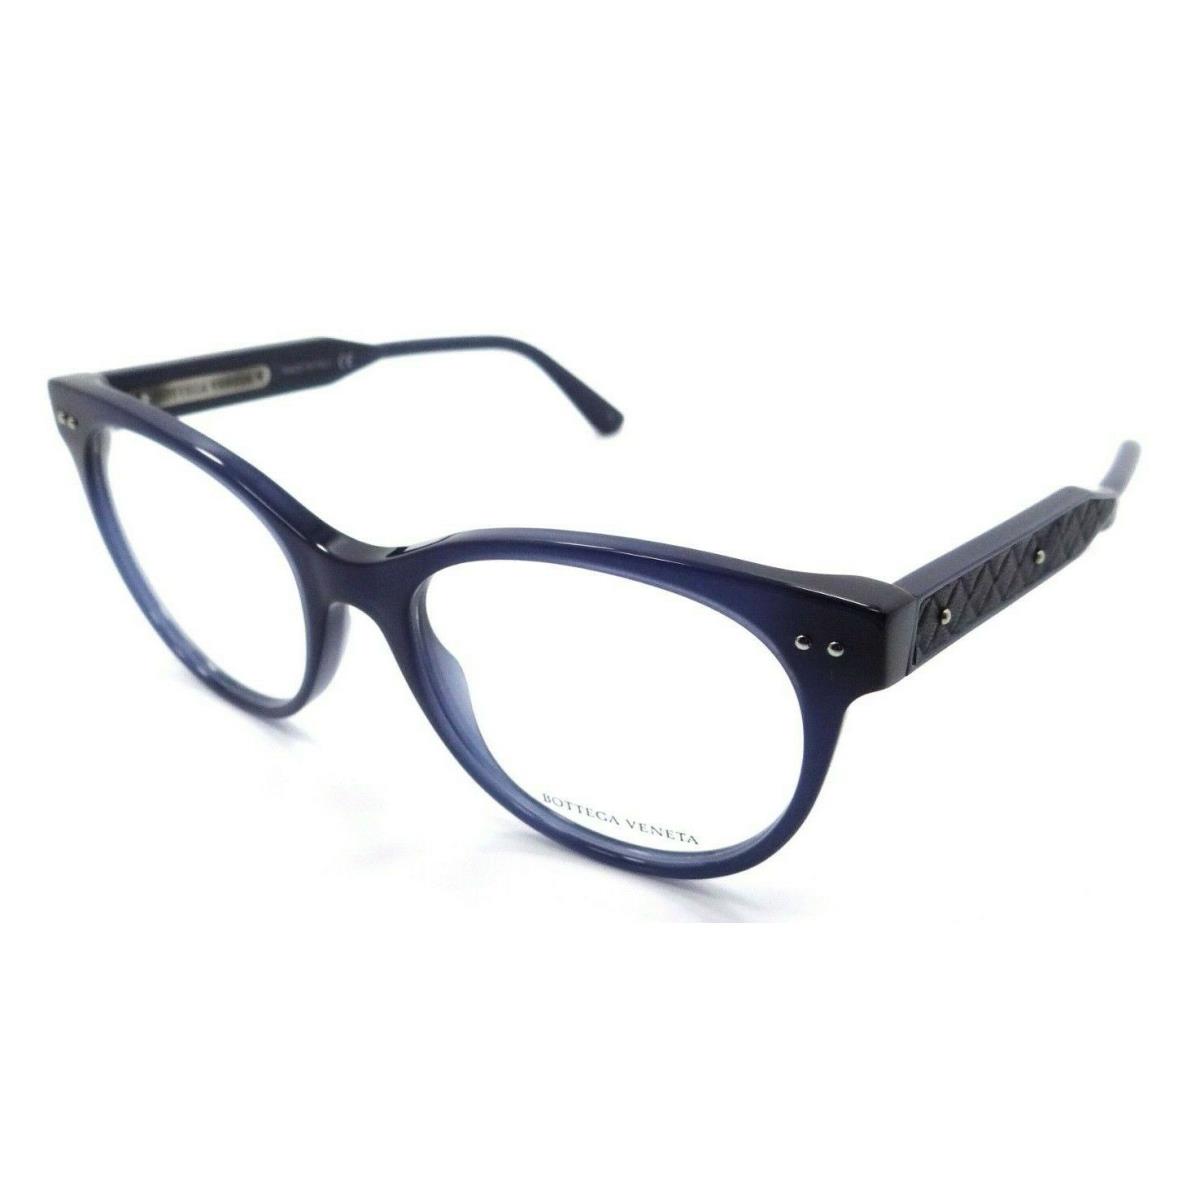 Bottega Veneta Eyeglasses Frames BV0017O 004 52-18-145 Blue Made in Italy